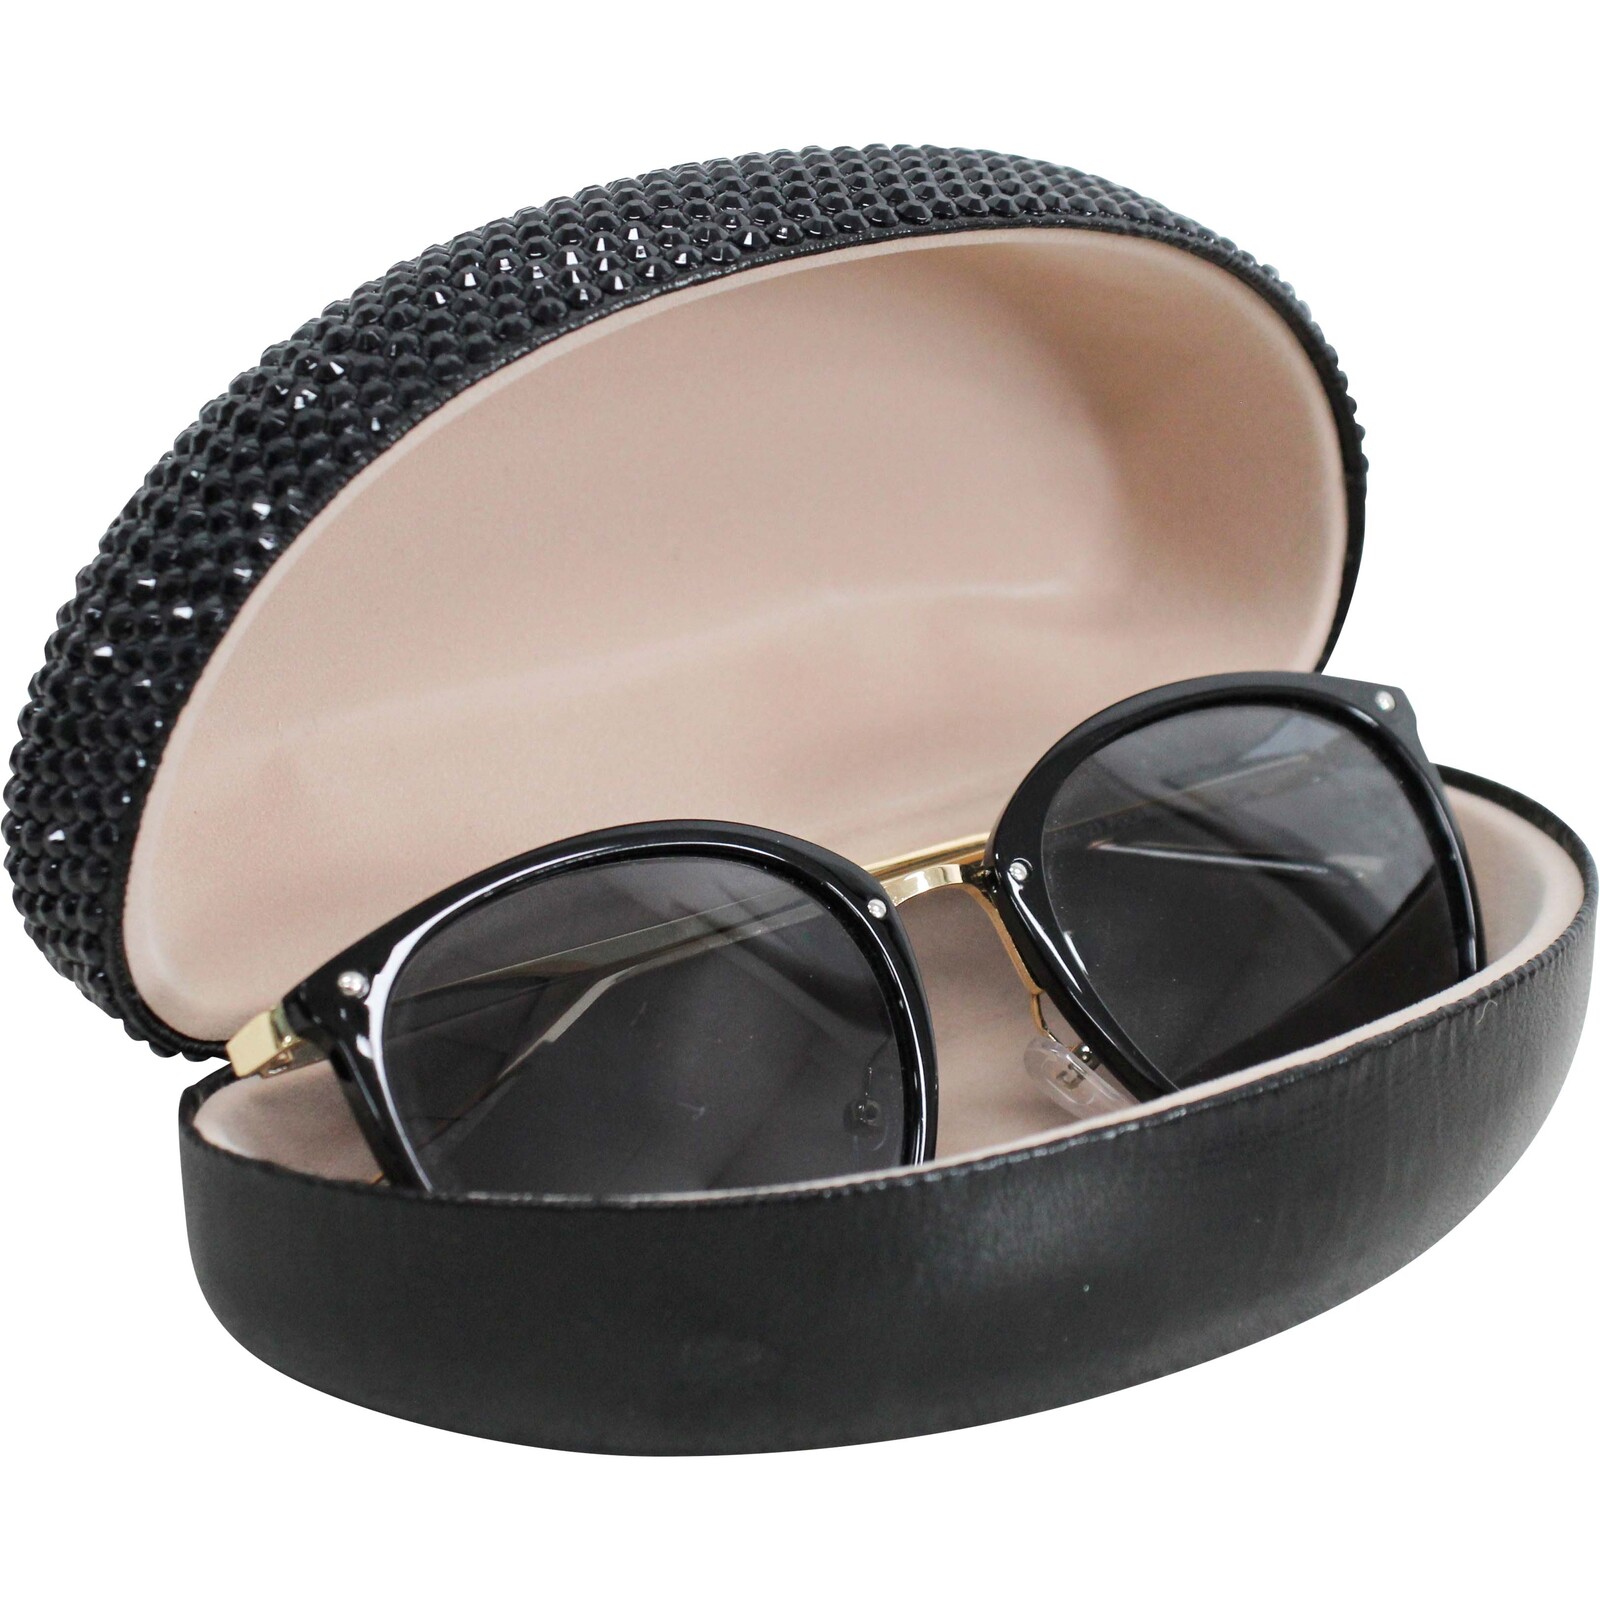 Sunglasses Case Bling Black